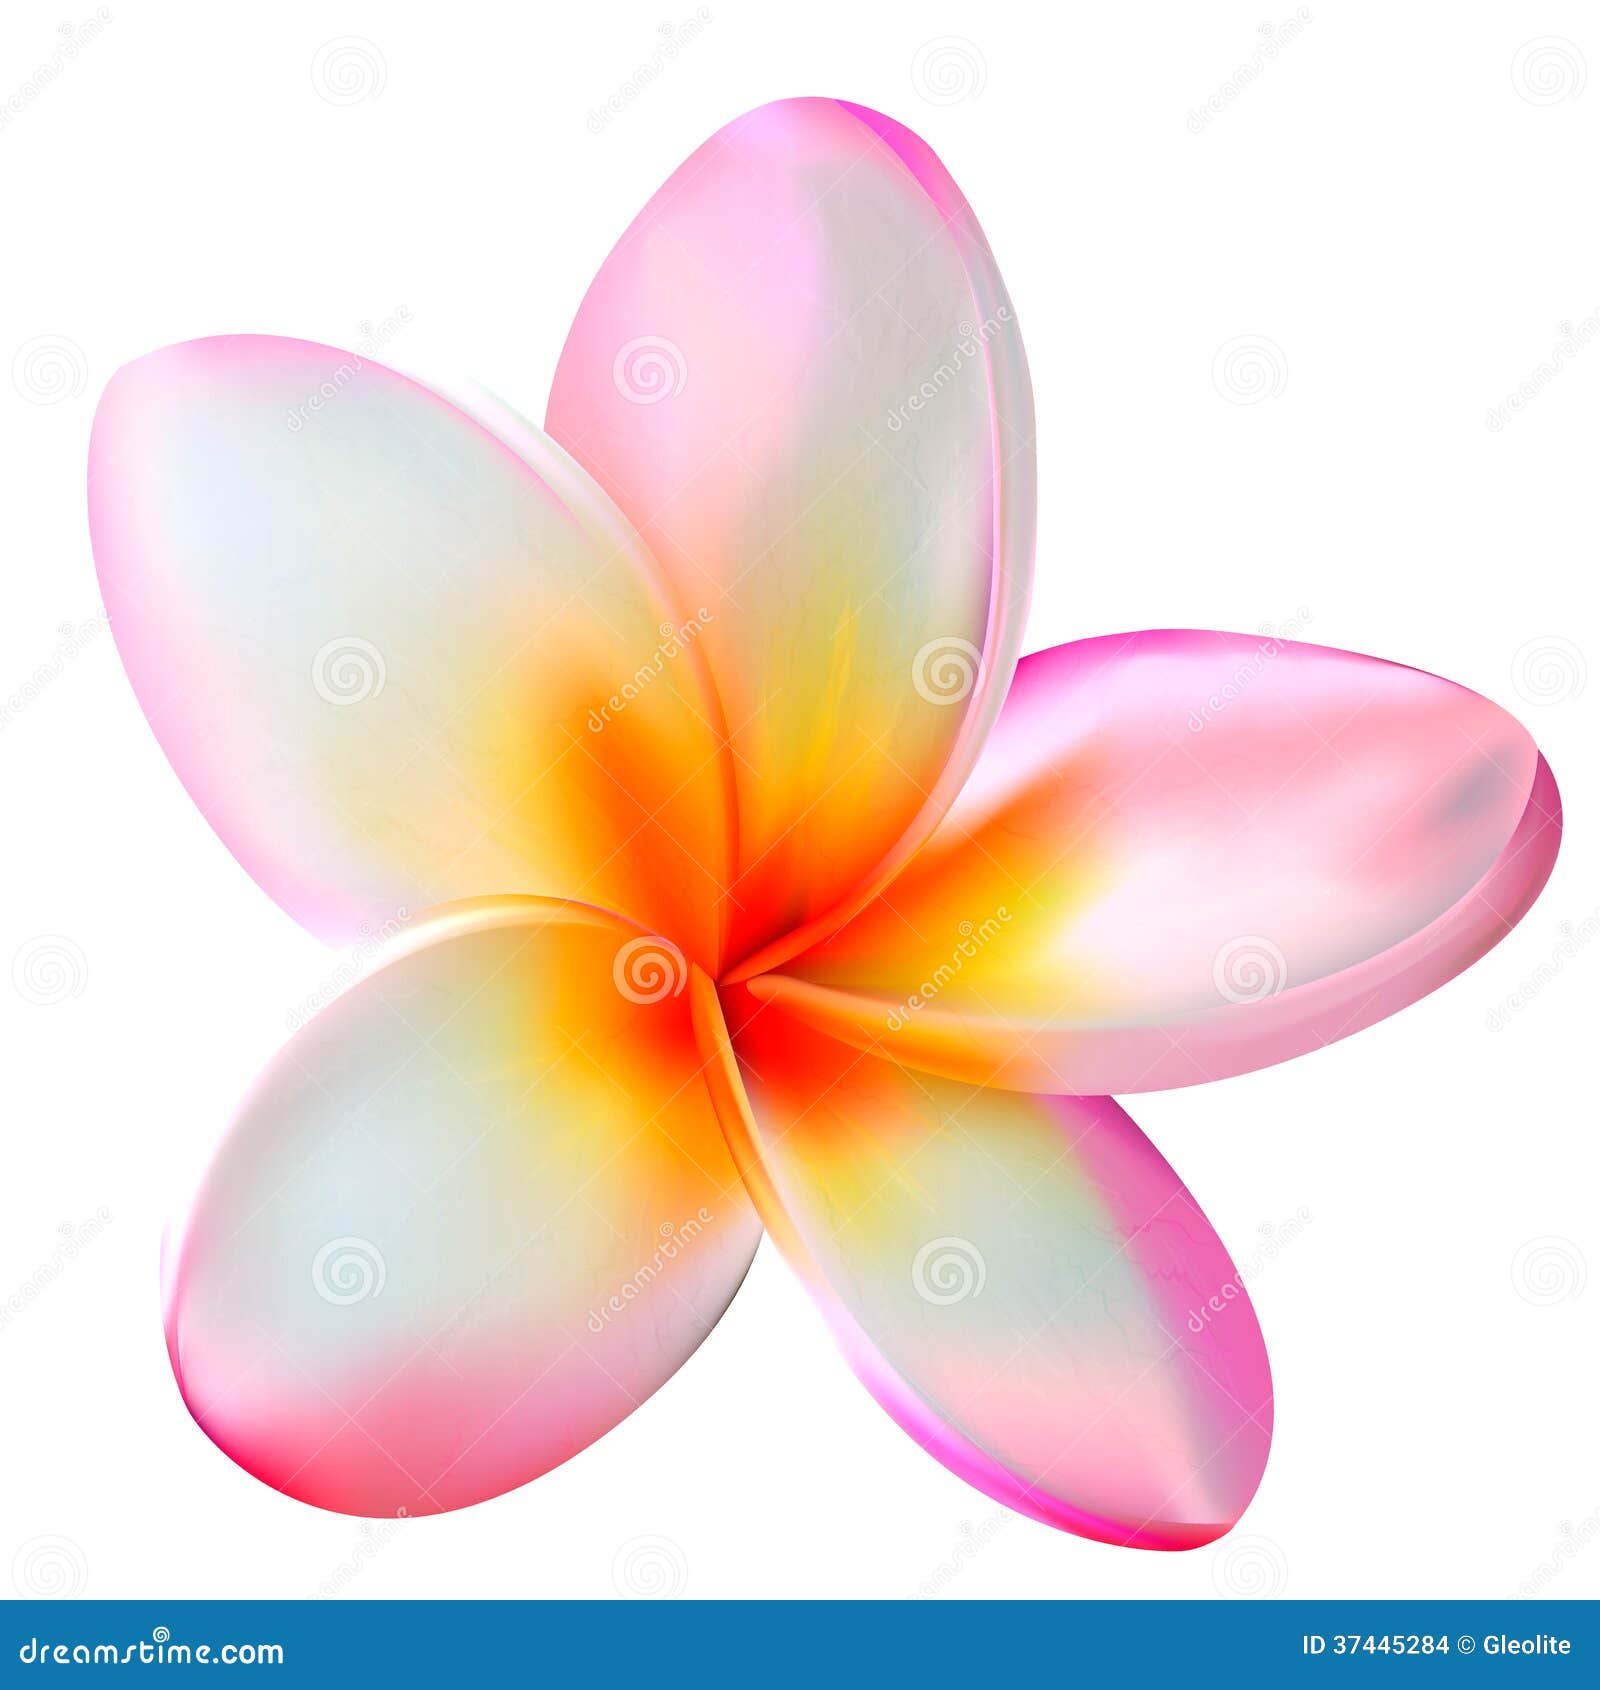 pink plumeria flower.  